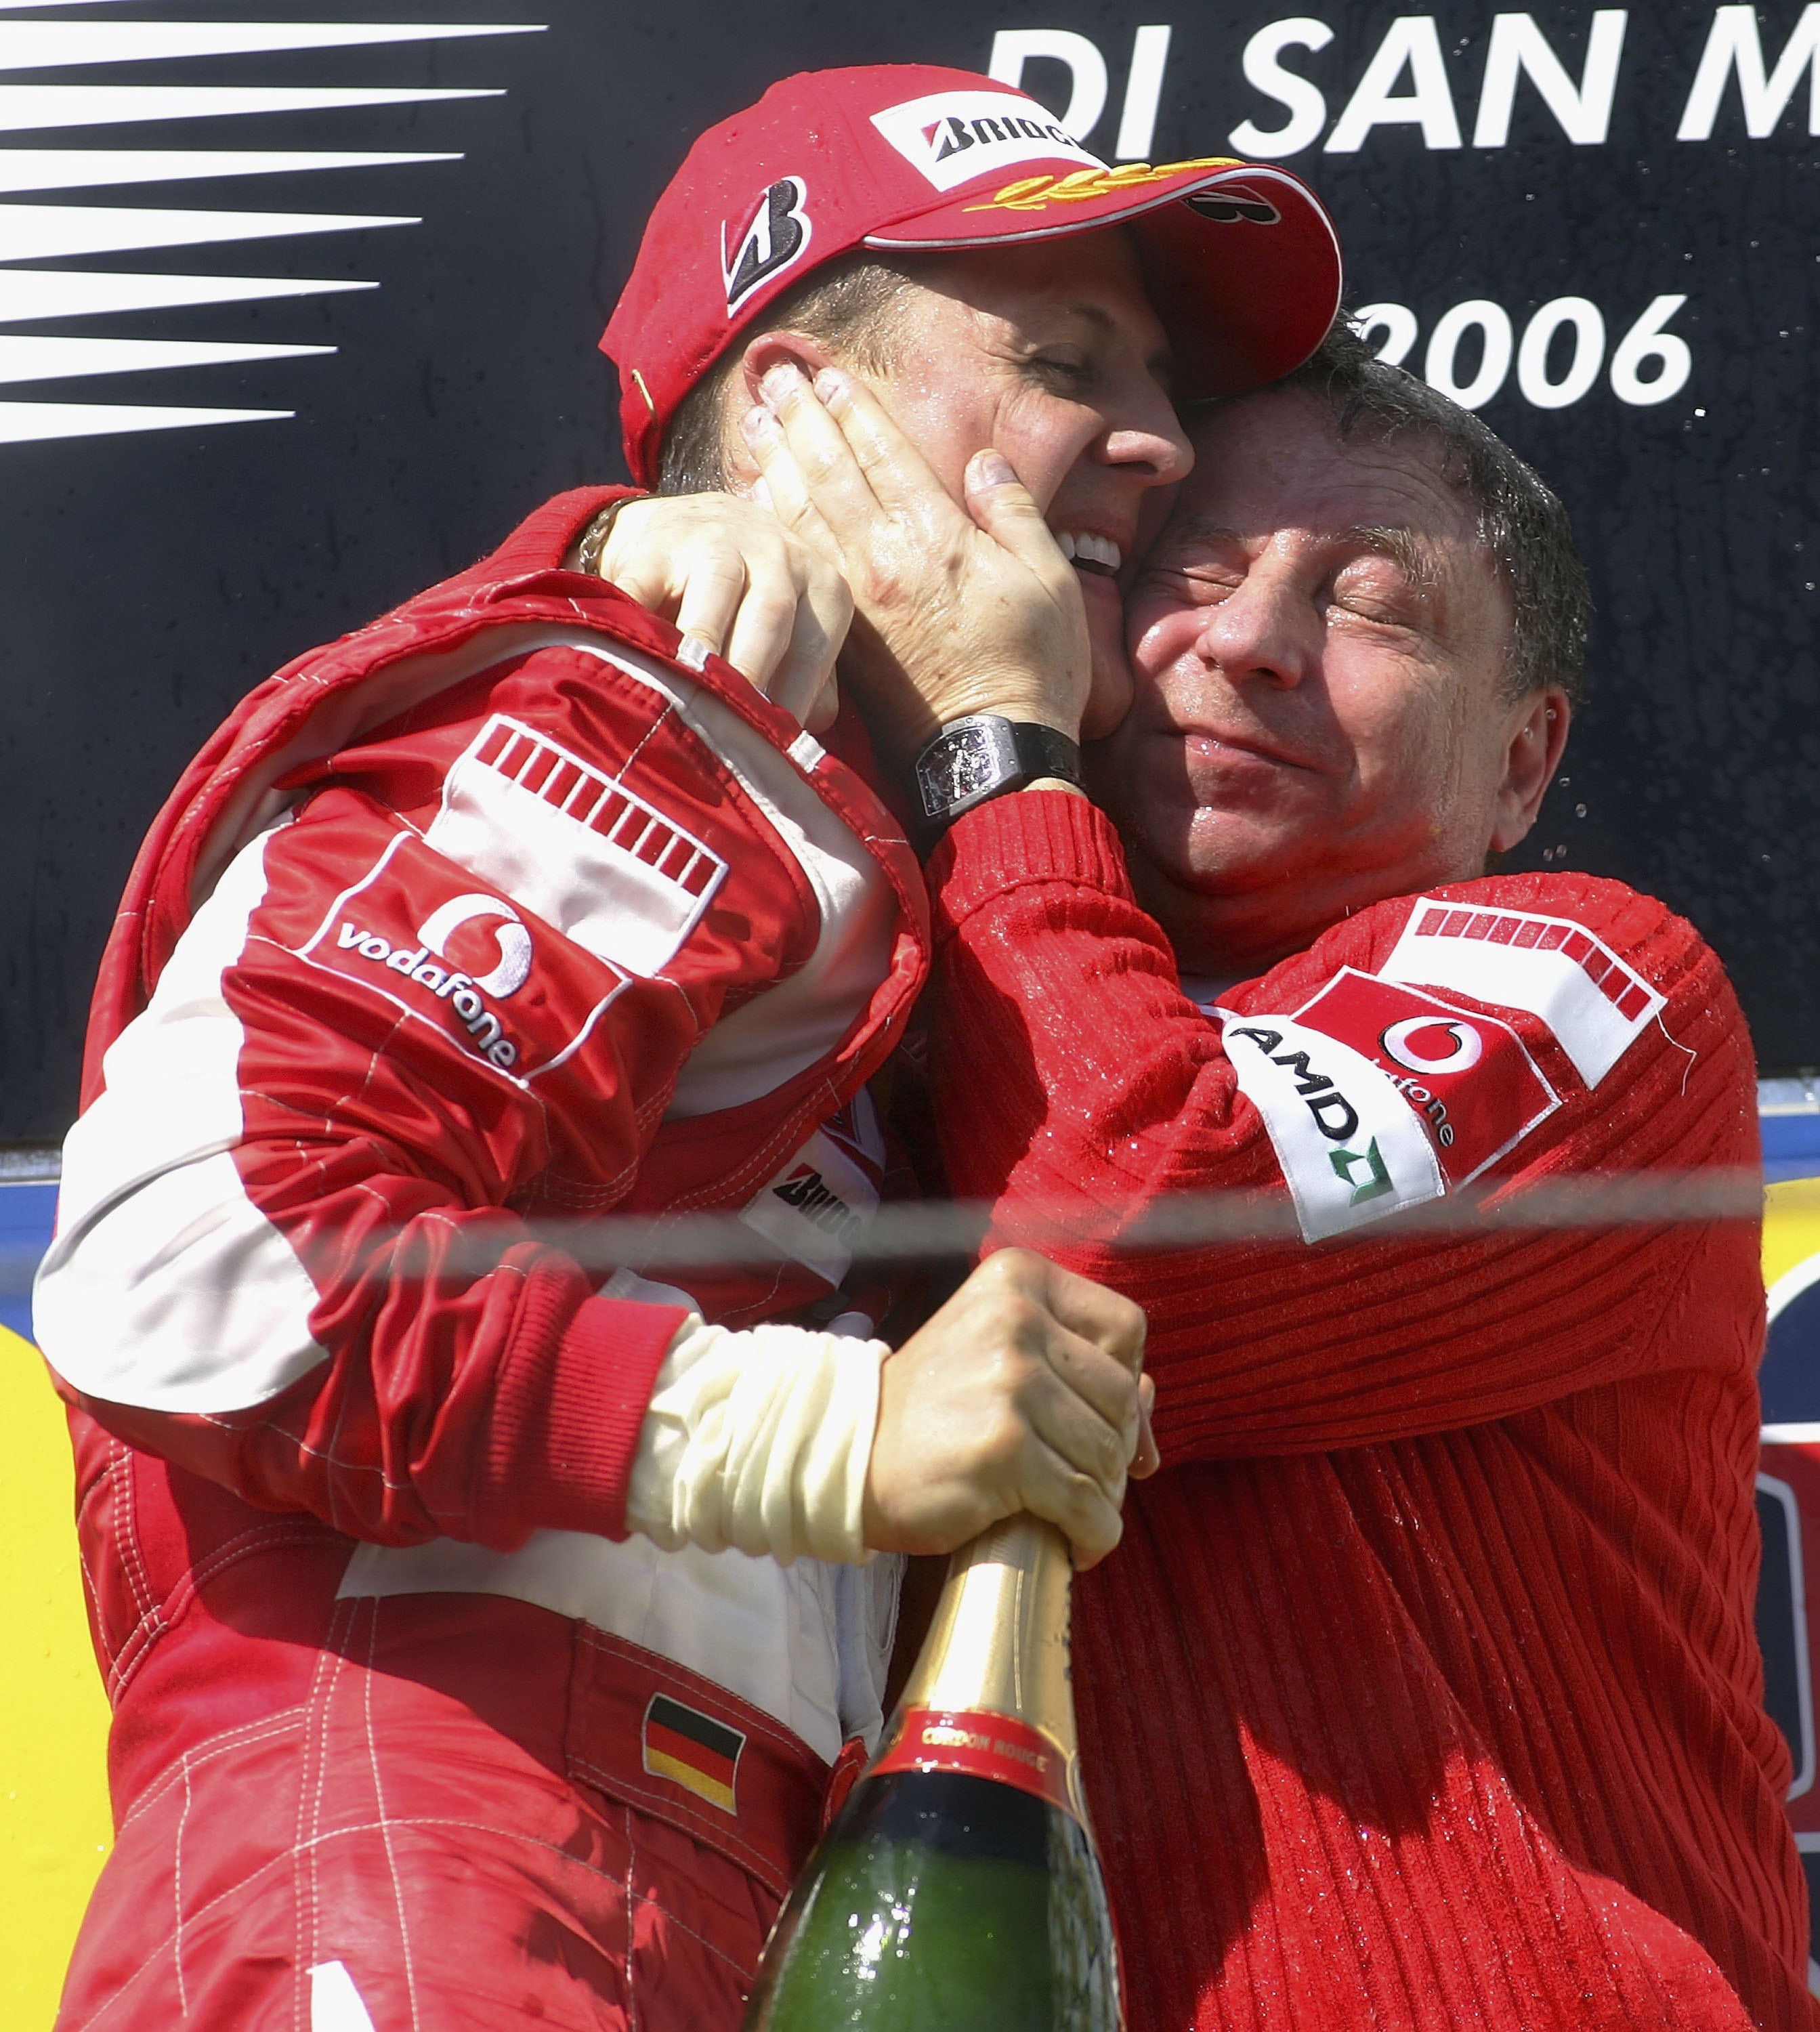 Jóban,rosszban. Jean Todt (jobbra) csapatfőnök volt a Ferrarinál, azóta tart a barátsága Schumaherrel./ Fotó:GettyImages